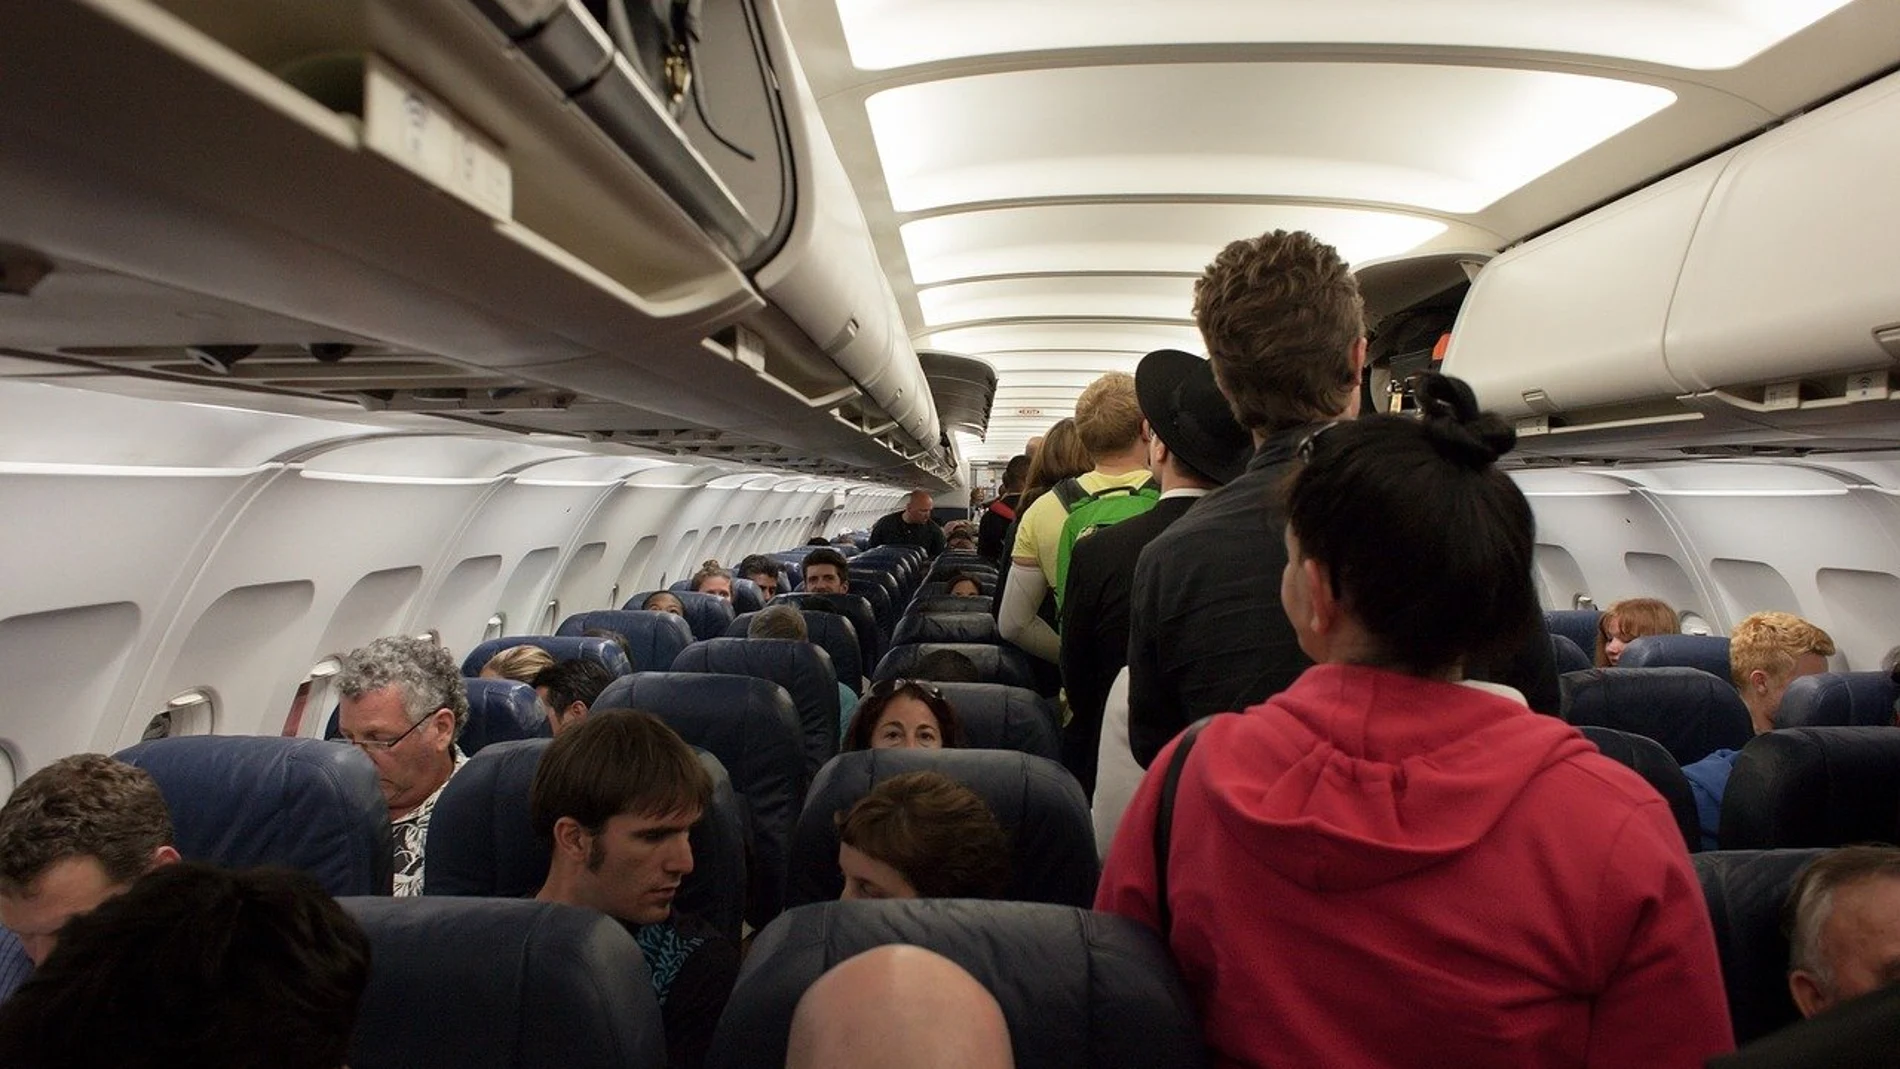 La tripulación de un avión se ve obligada a atar a un pasajero a su asiento con cinta adhesiva